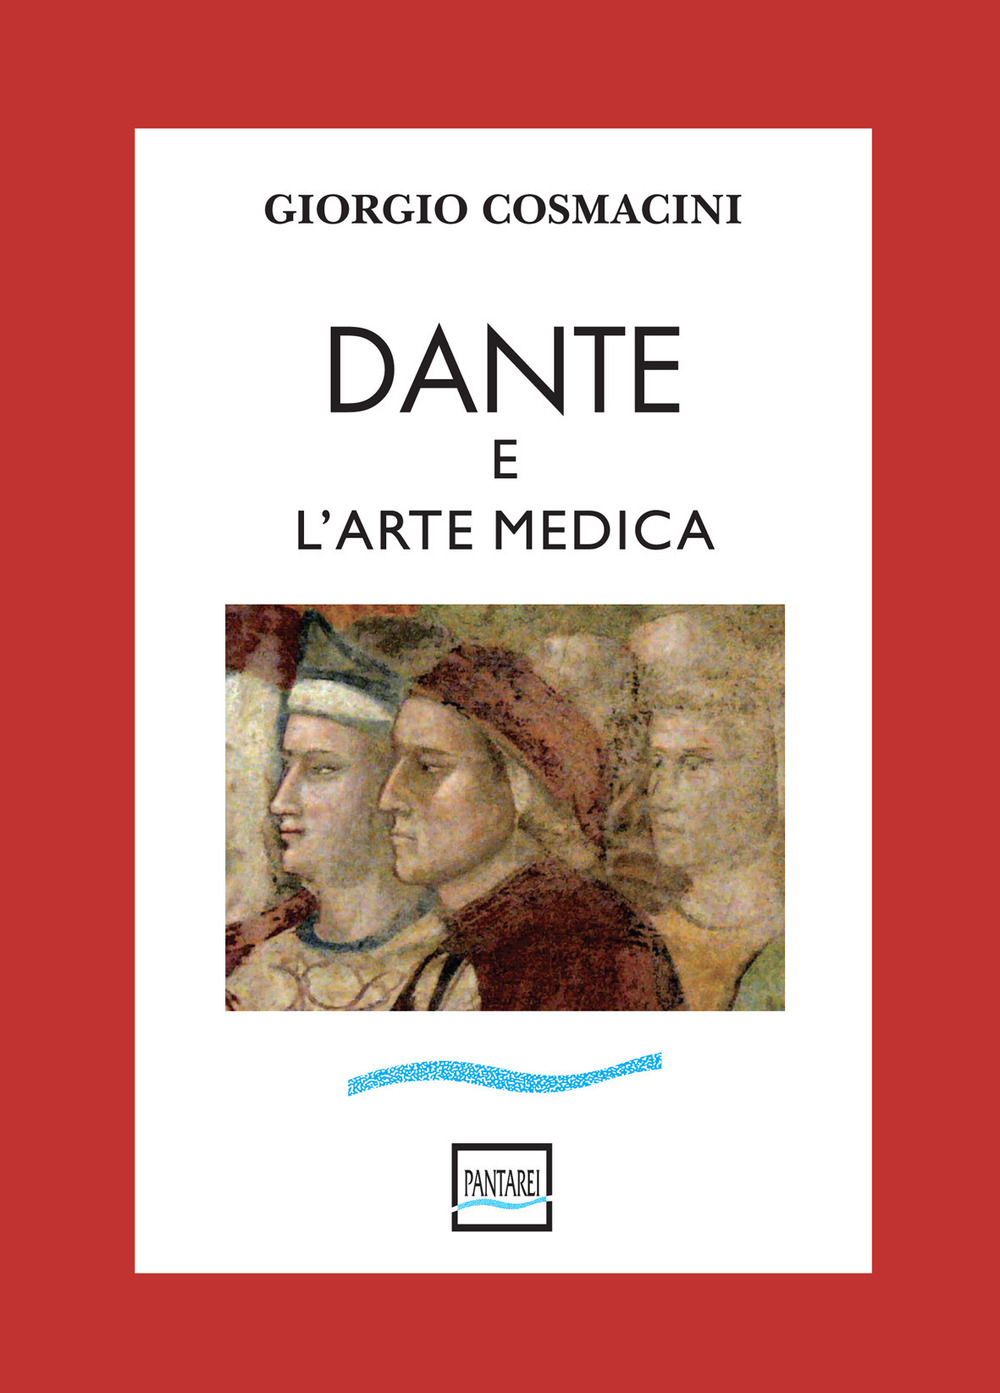 Dante e l'arte medica